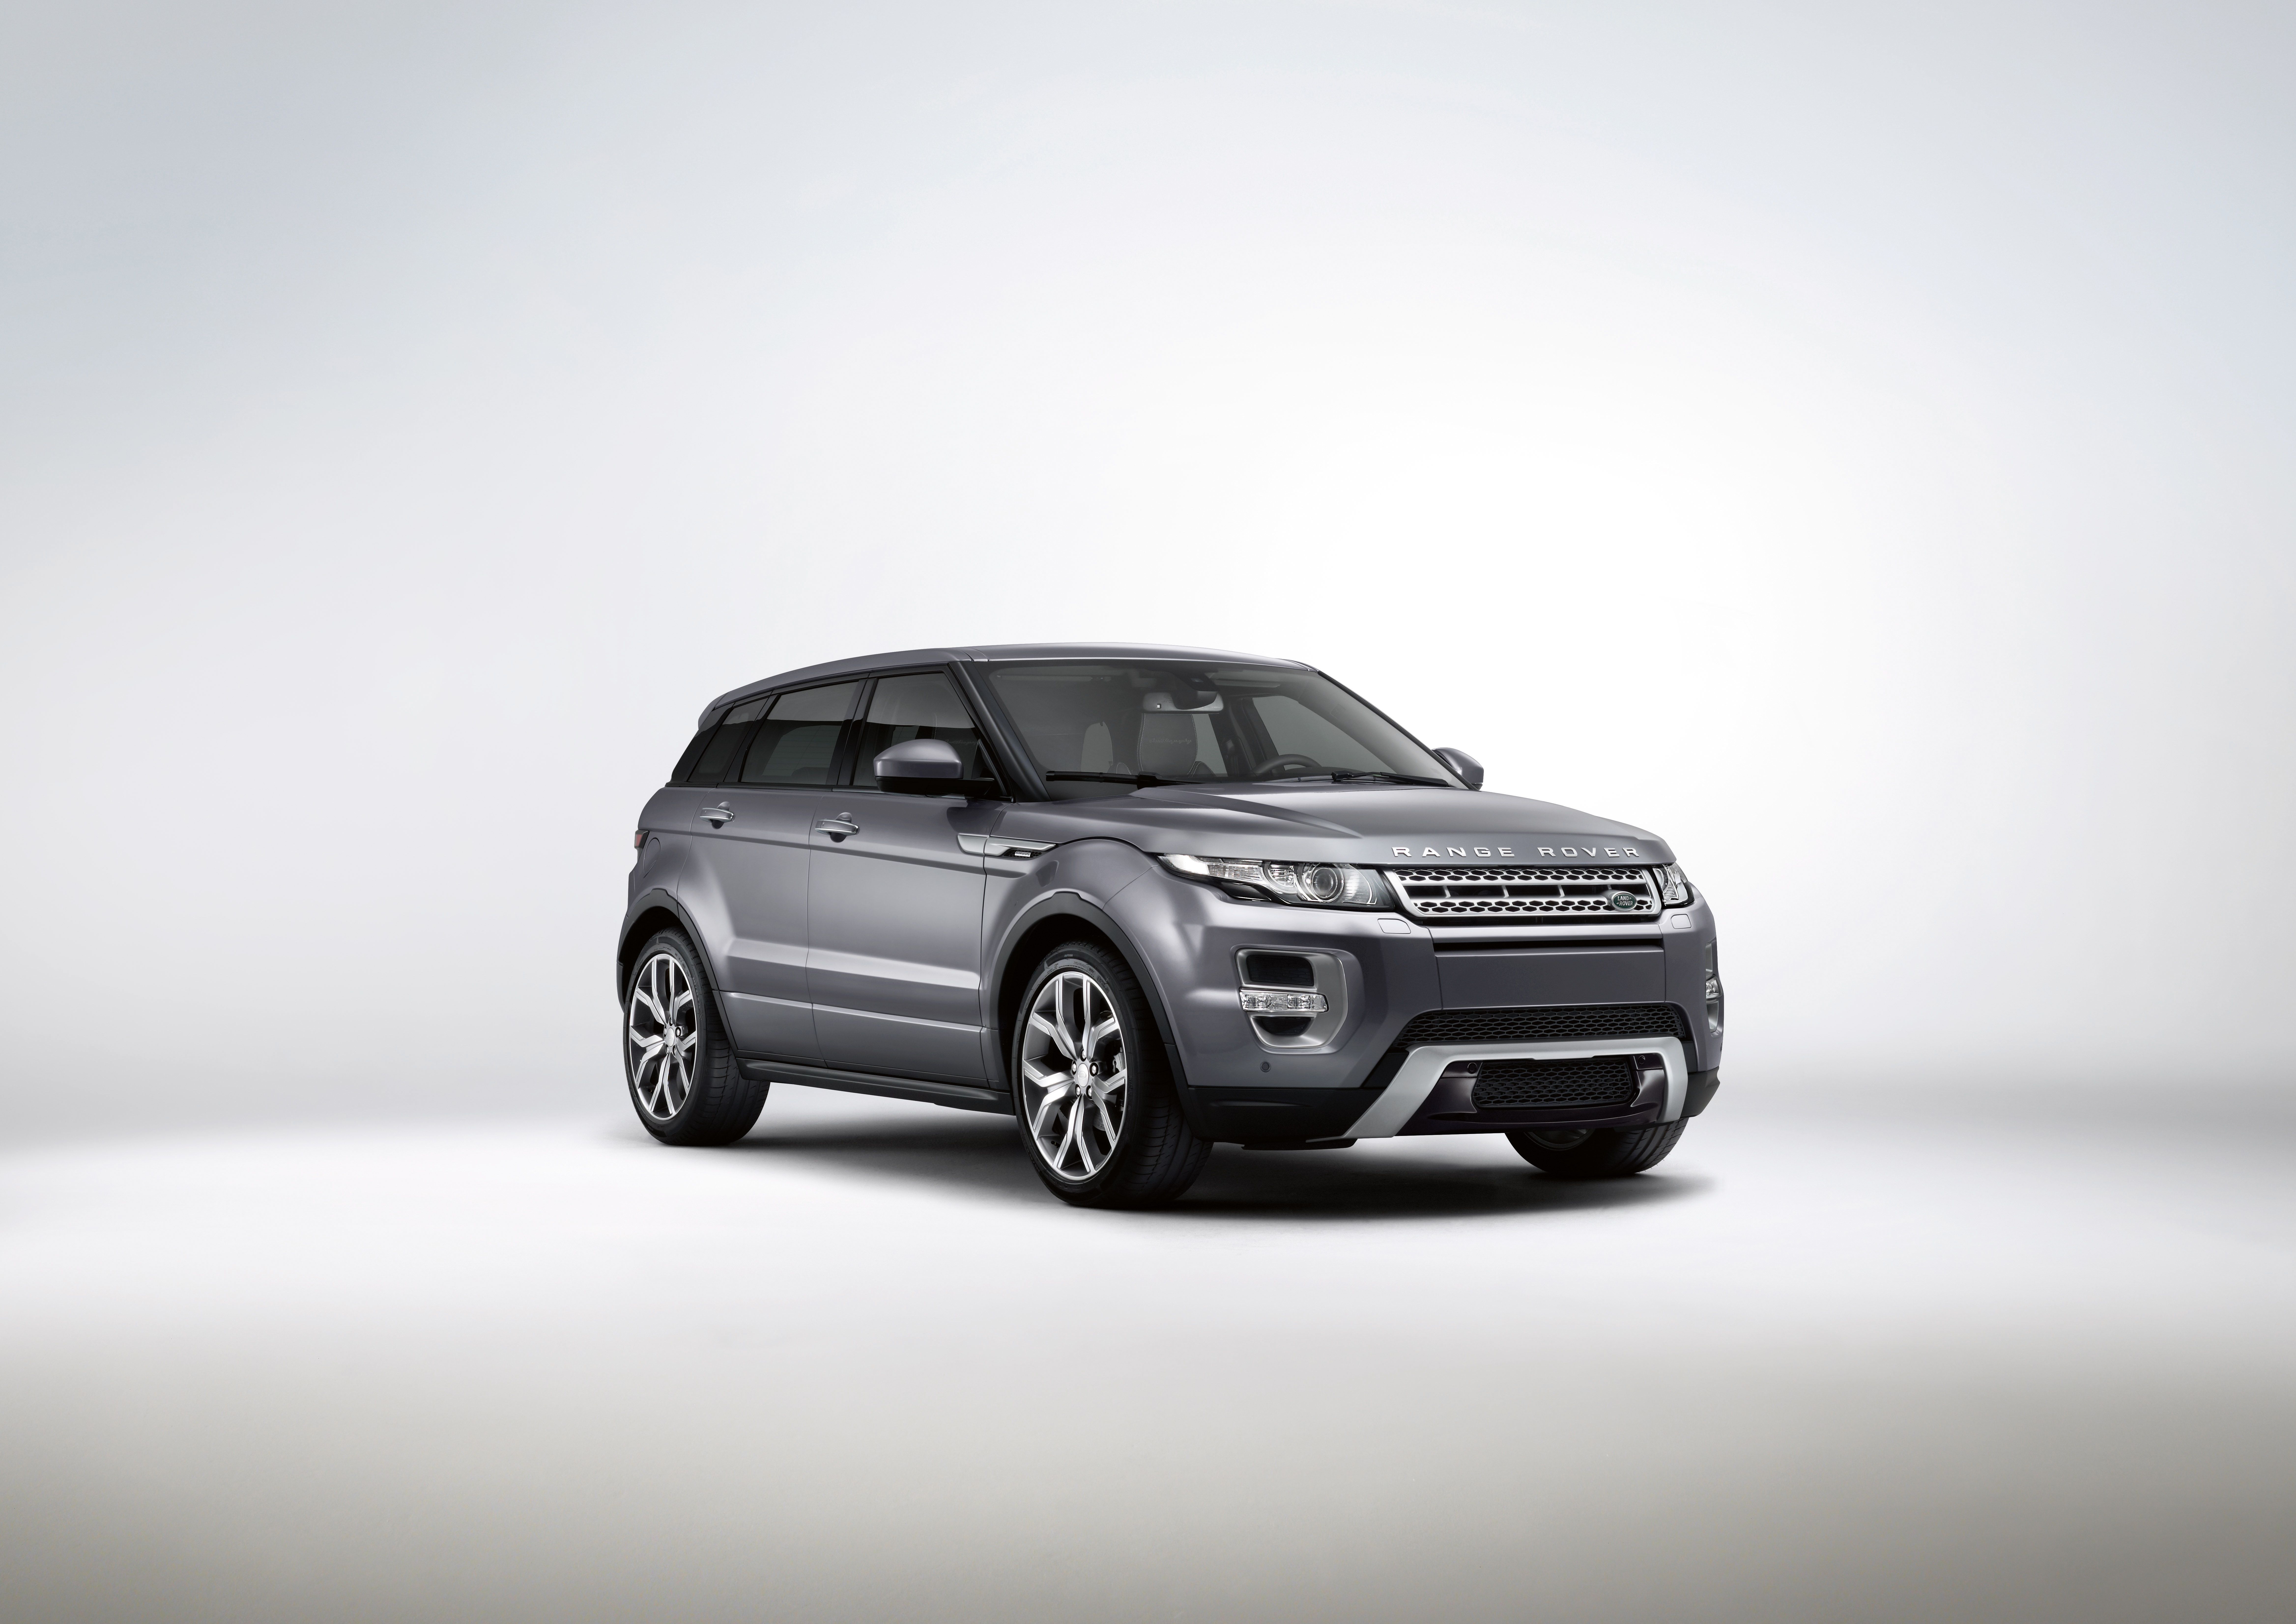 2015 Land Rover Range Rover Evoque Autobiography